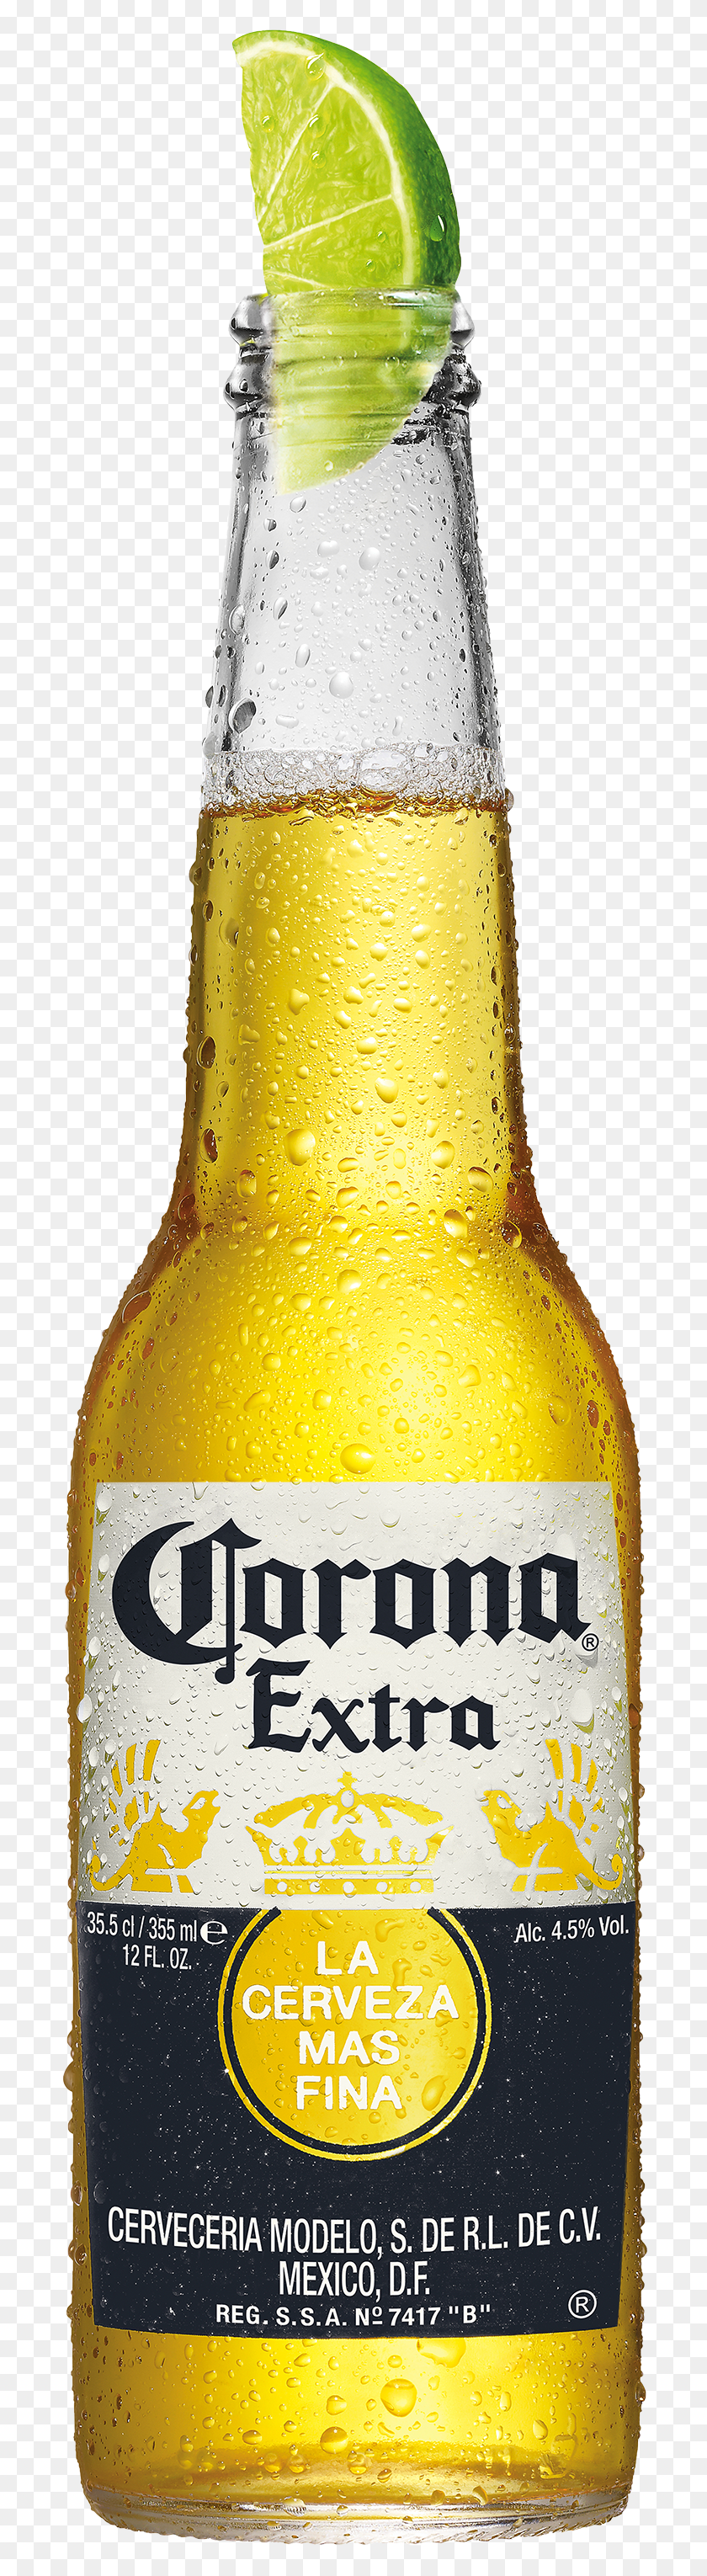 700x3000 Descargar Png Corona Extra Cerveza Png / Corona Extra Cerveza Hd Png